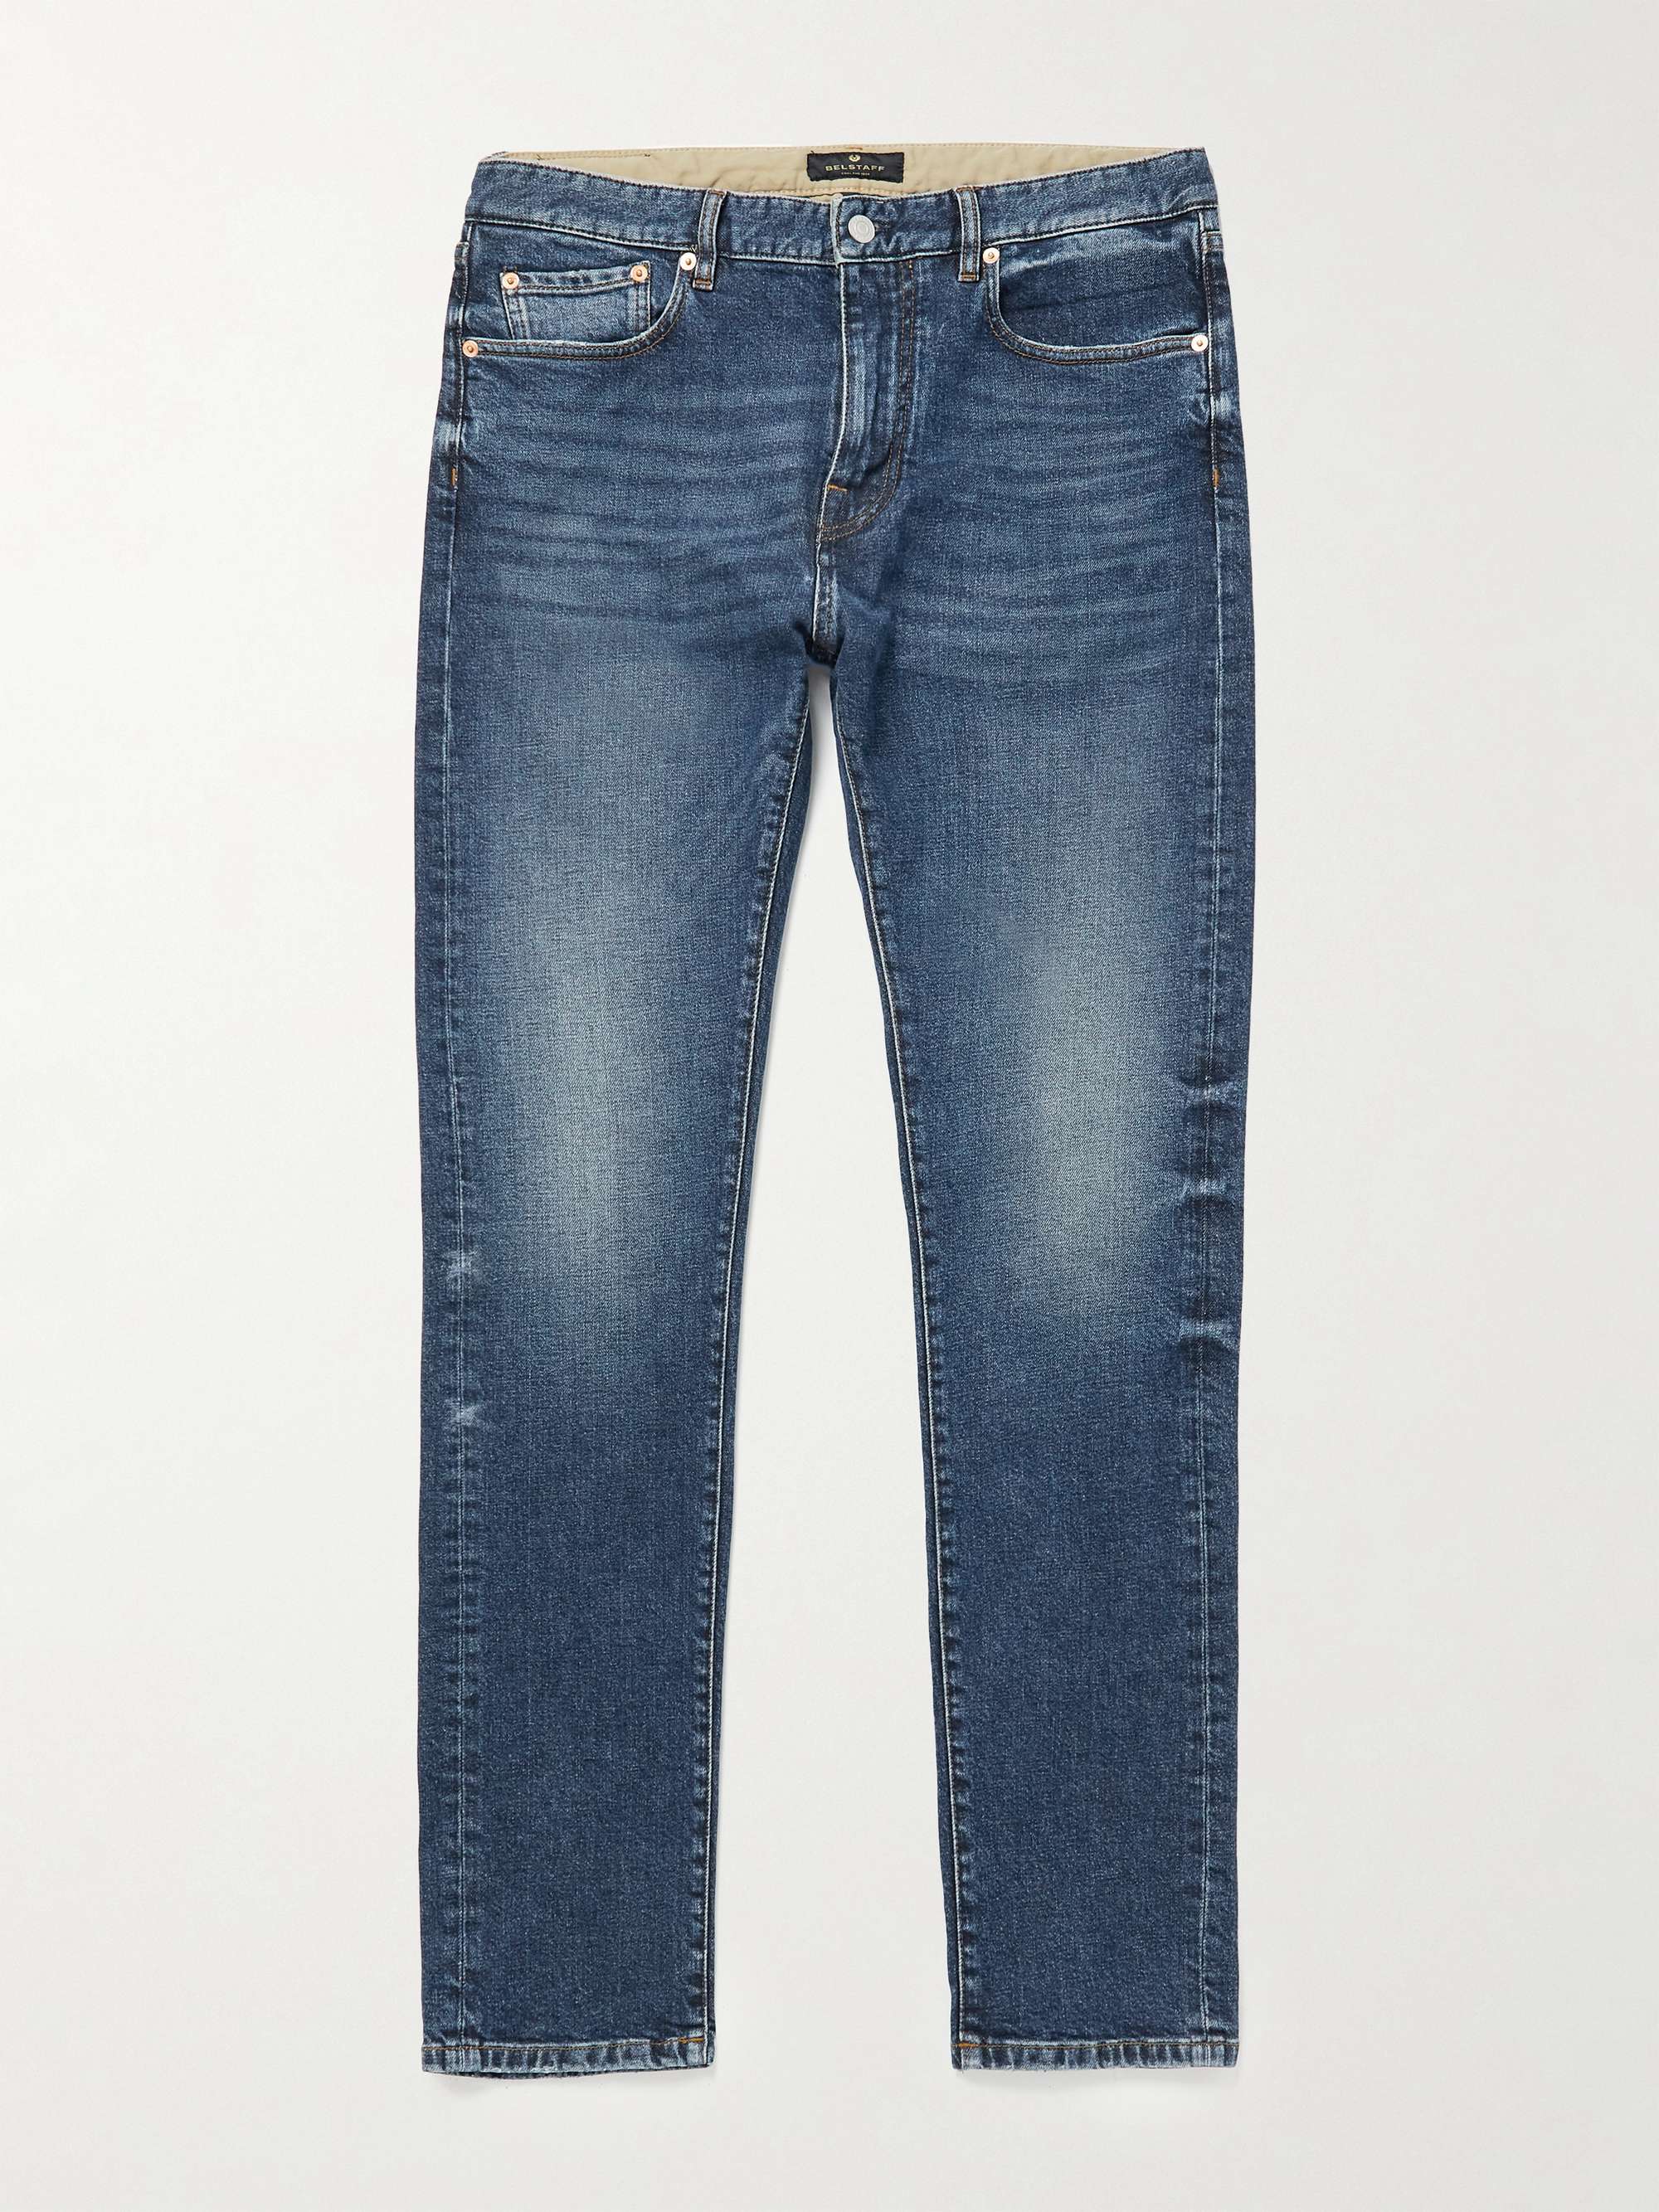 BELSTAFF Longton Slim-Fit Jeans for Men | MR PORTER